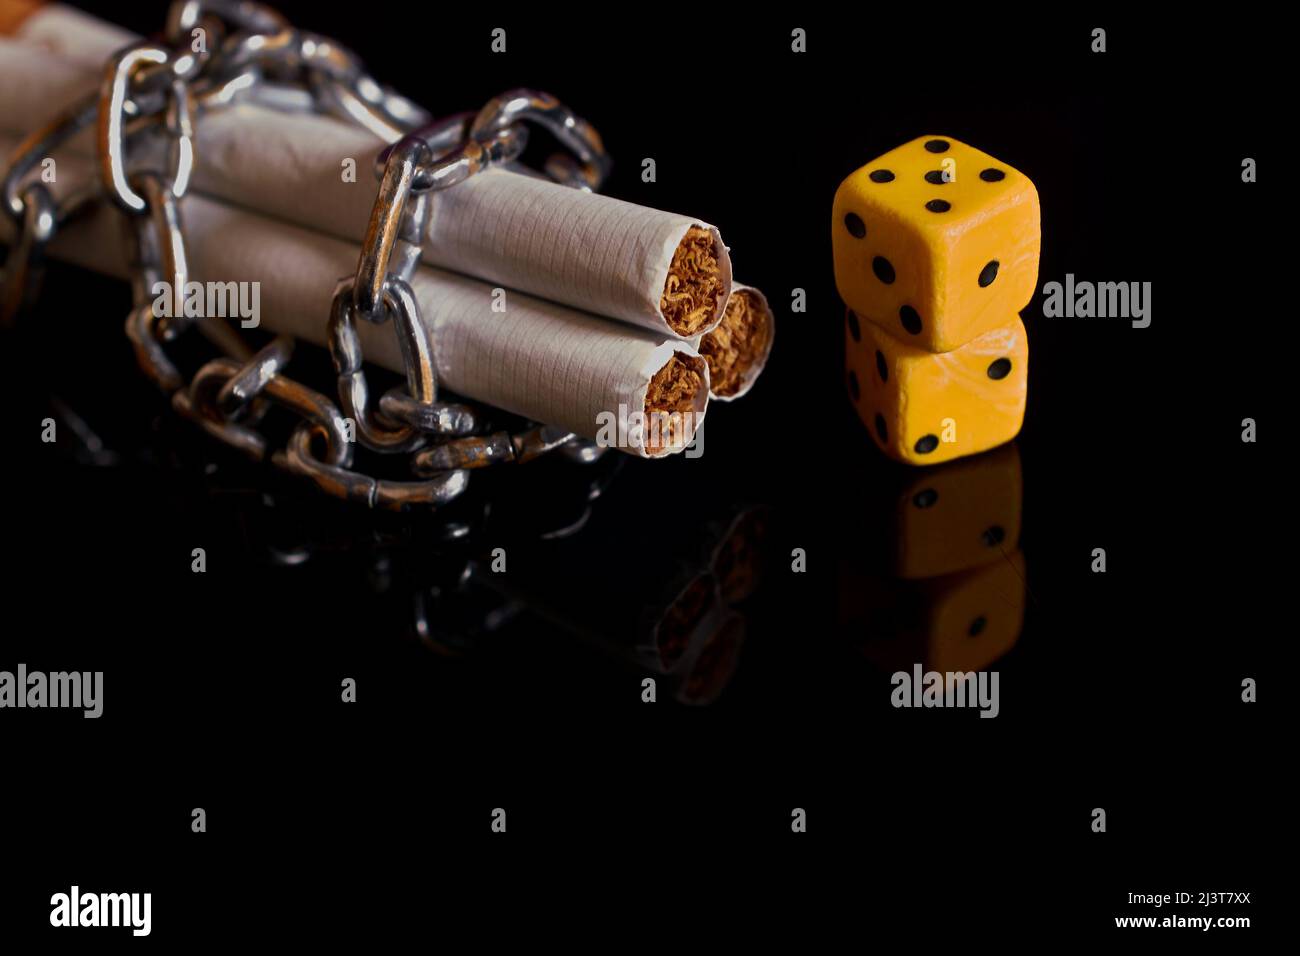 Nicotina e dipendenza da gioco d'azzardo. Sigarette, riavvolte da una catena e da due dadi Foto Stock